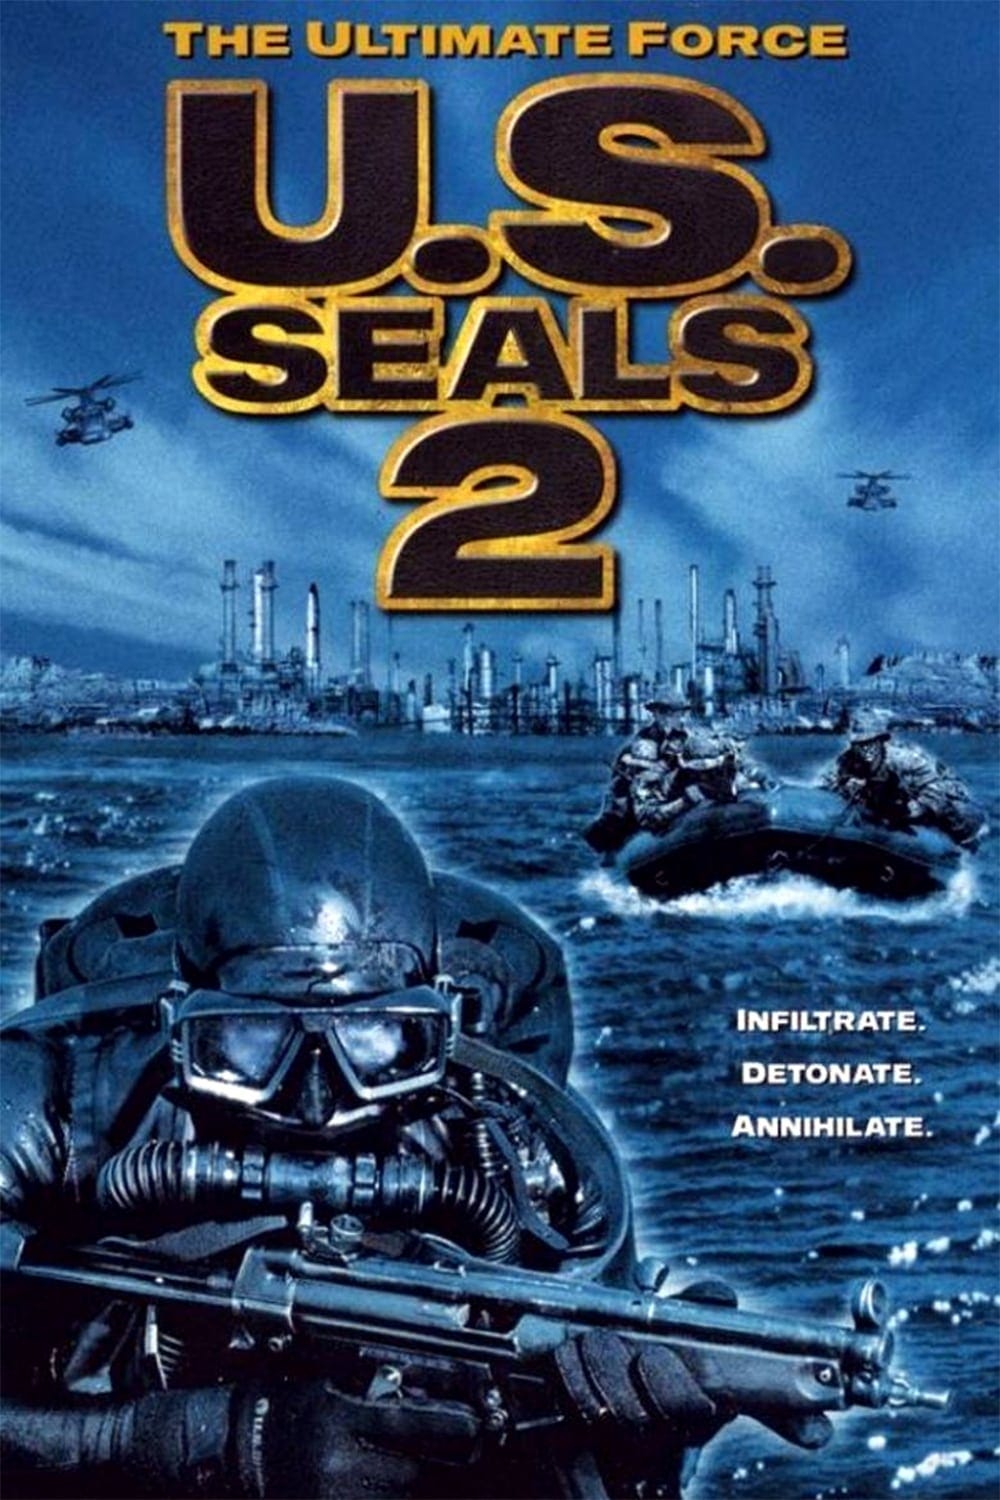 U.S. Seals II (2001) | Poster